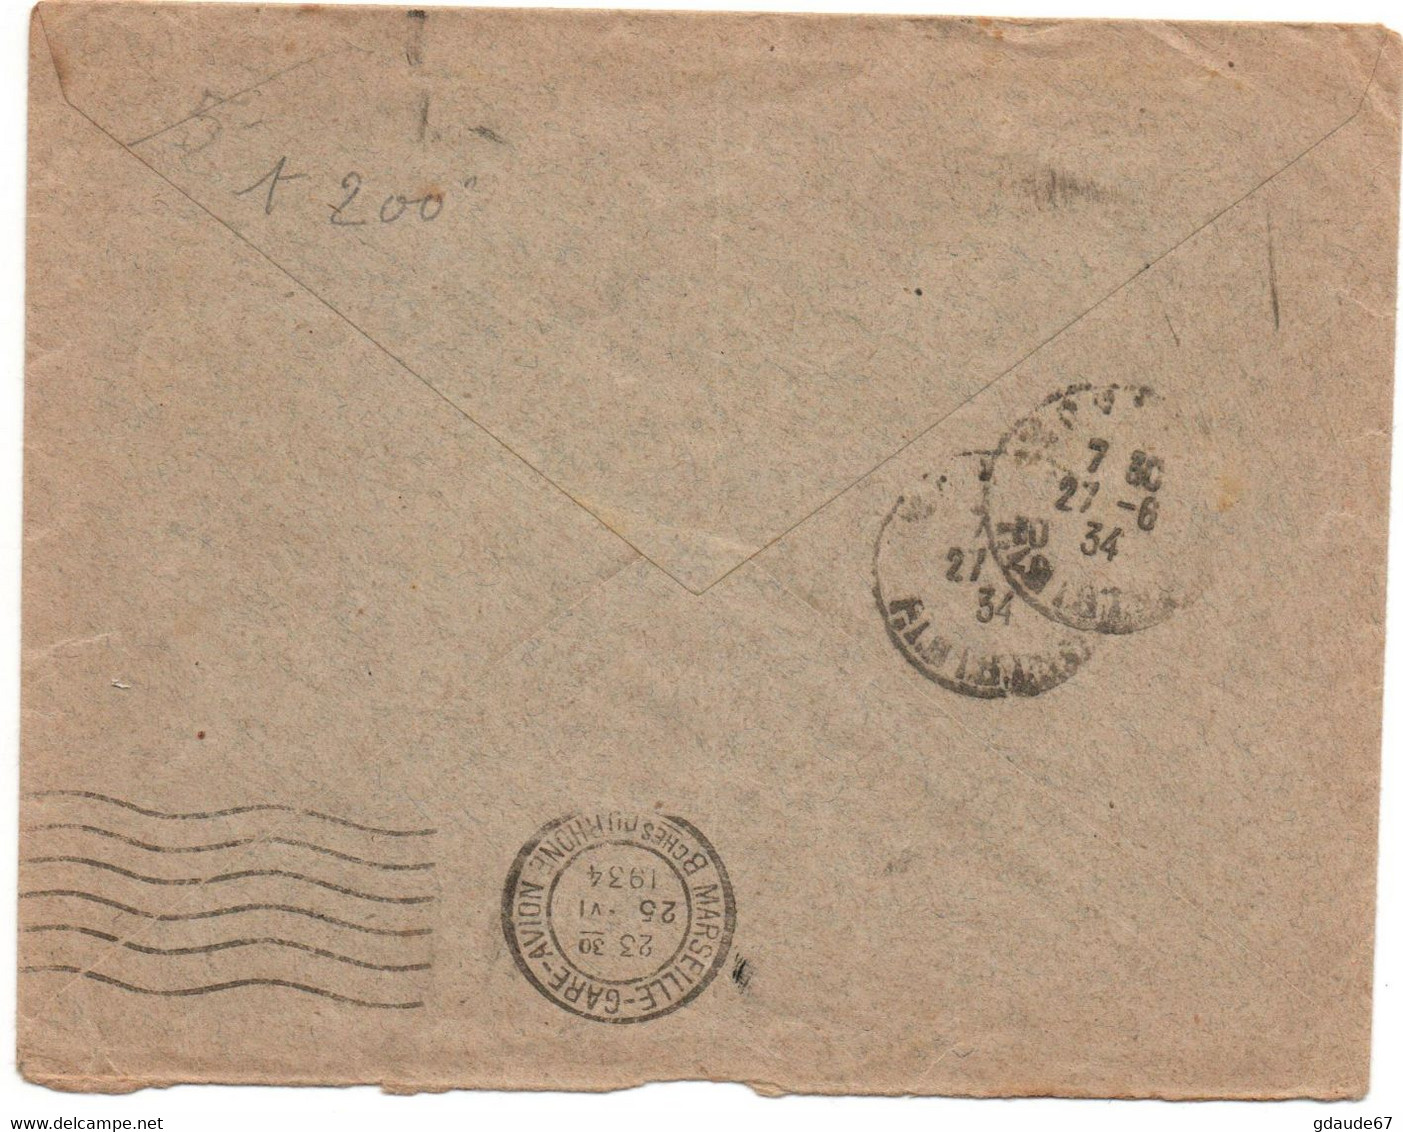 1934 - ENVELOPPE PAR AVION De TUNIS (TUNISIE) Pour MORLAIX (FINISTERE) - POSTE AERIENNE - Lettres & Documents